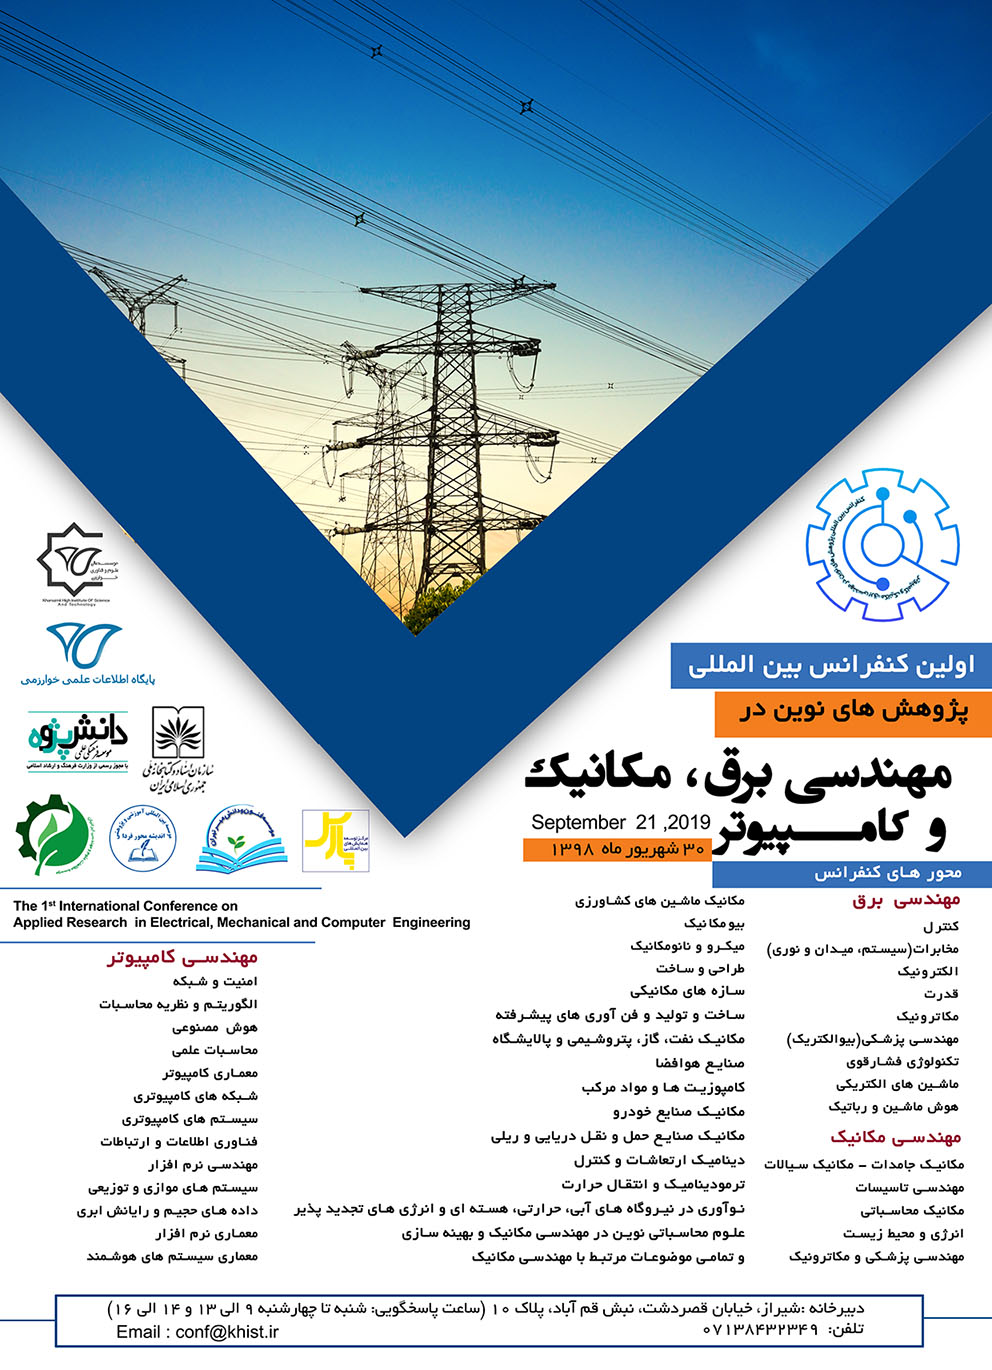 پوستر کنفرانس بین المللی پژوهش های نوین در مهندسی برق، مکانیک و کامپیوتر